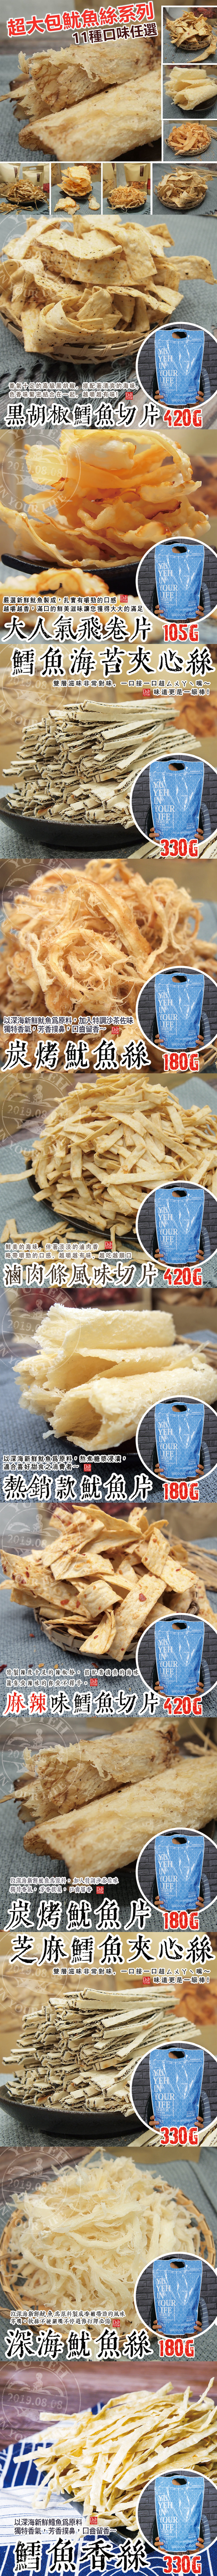  【極鮮配】超大包魷魚絲系列 24包(11口味)